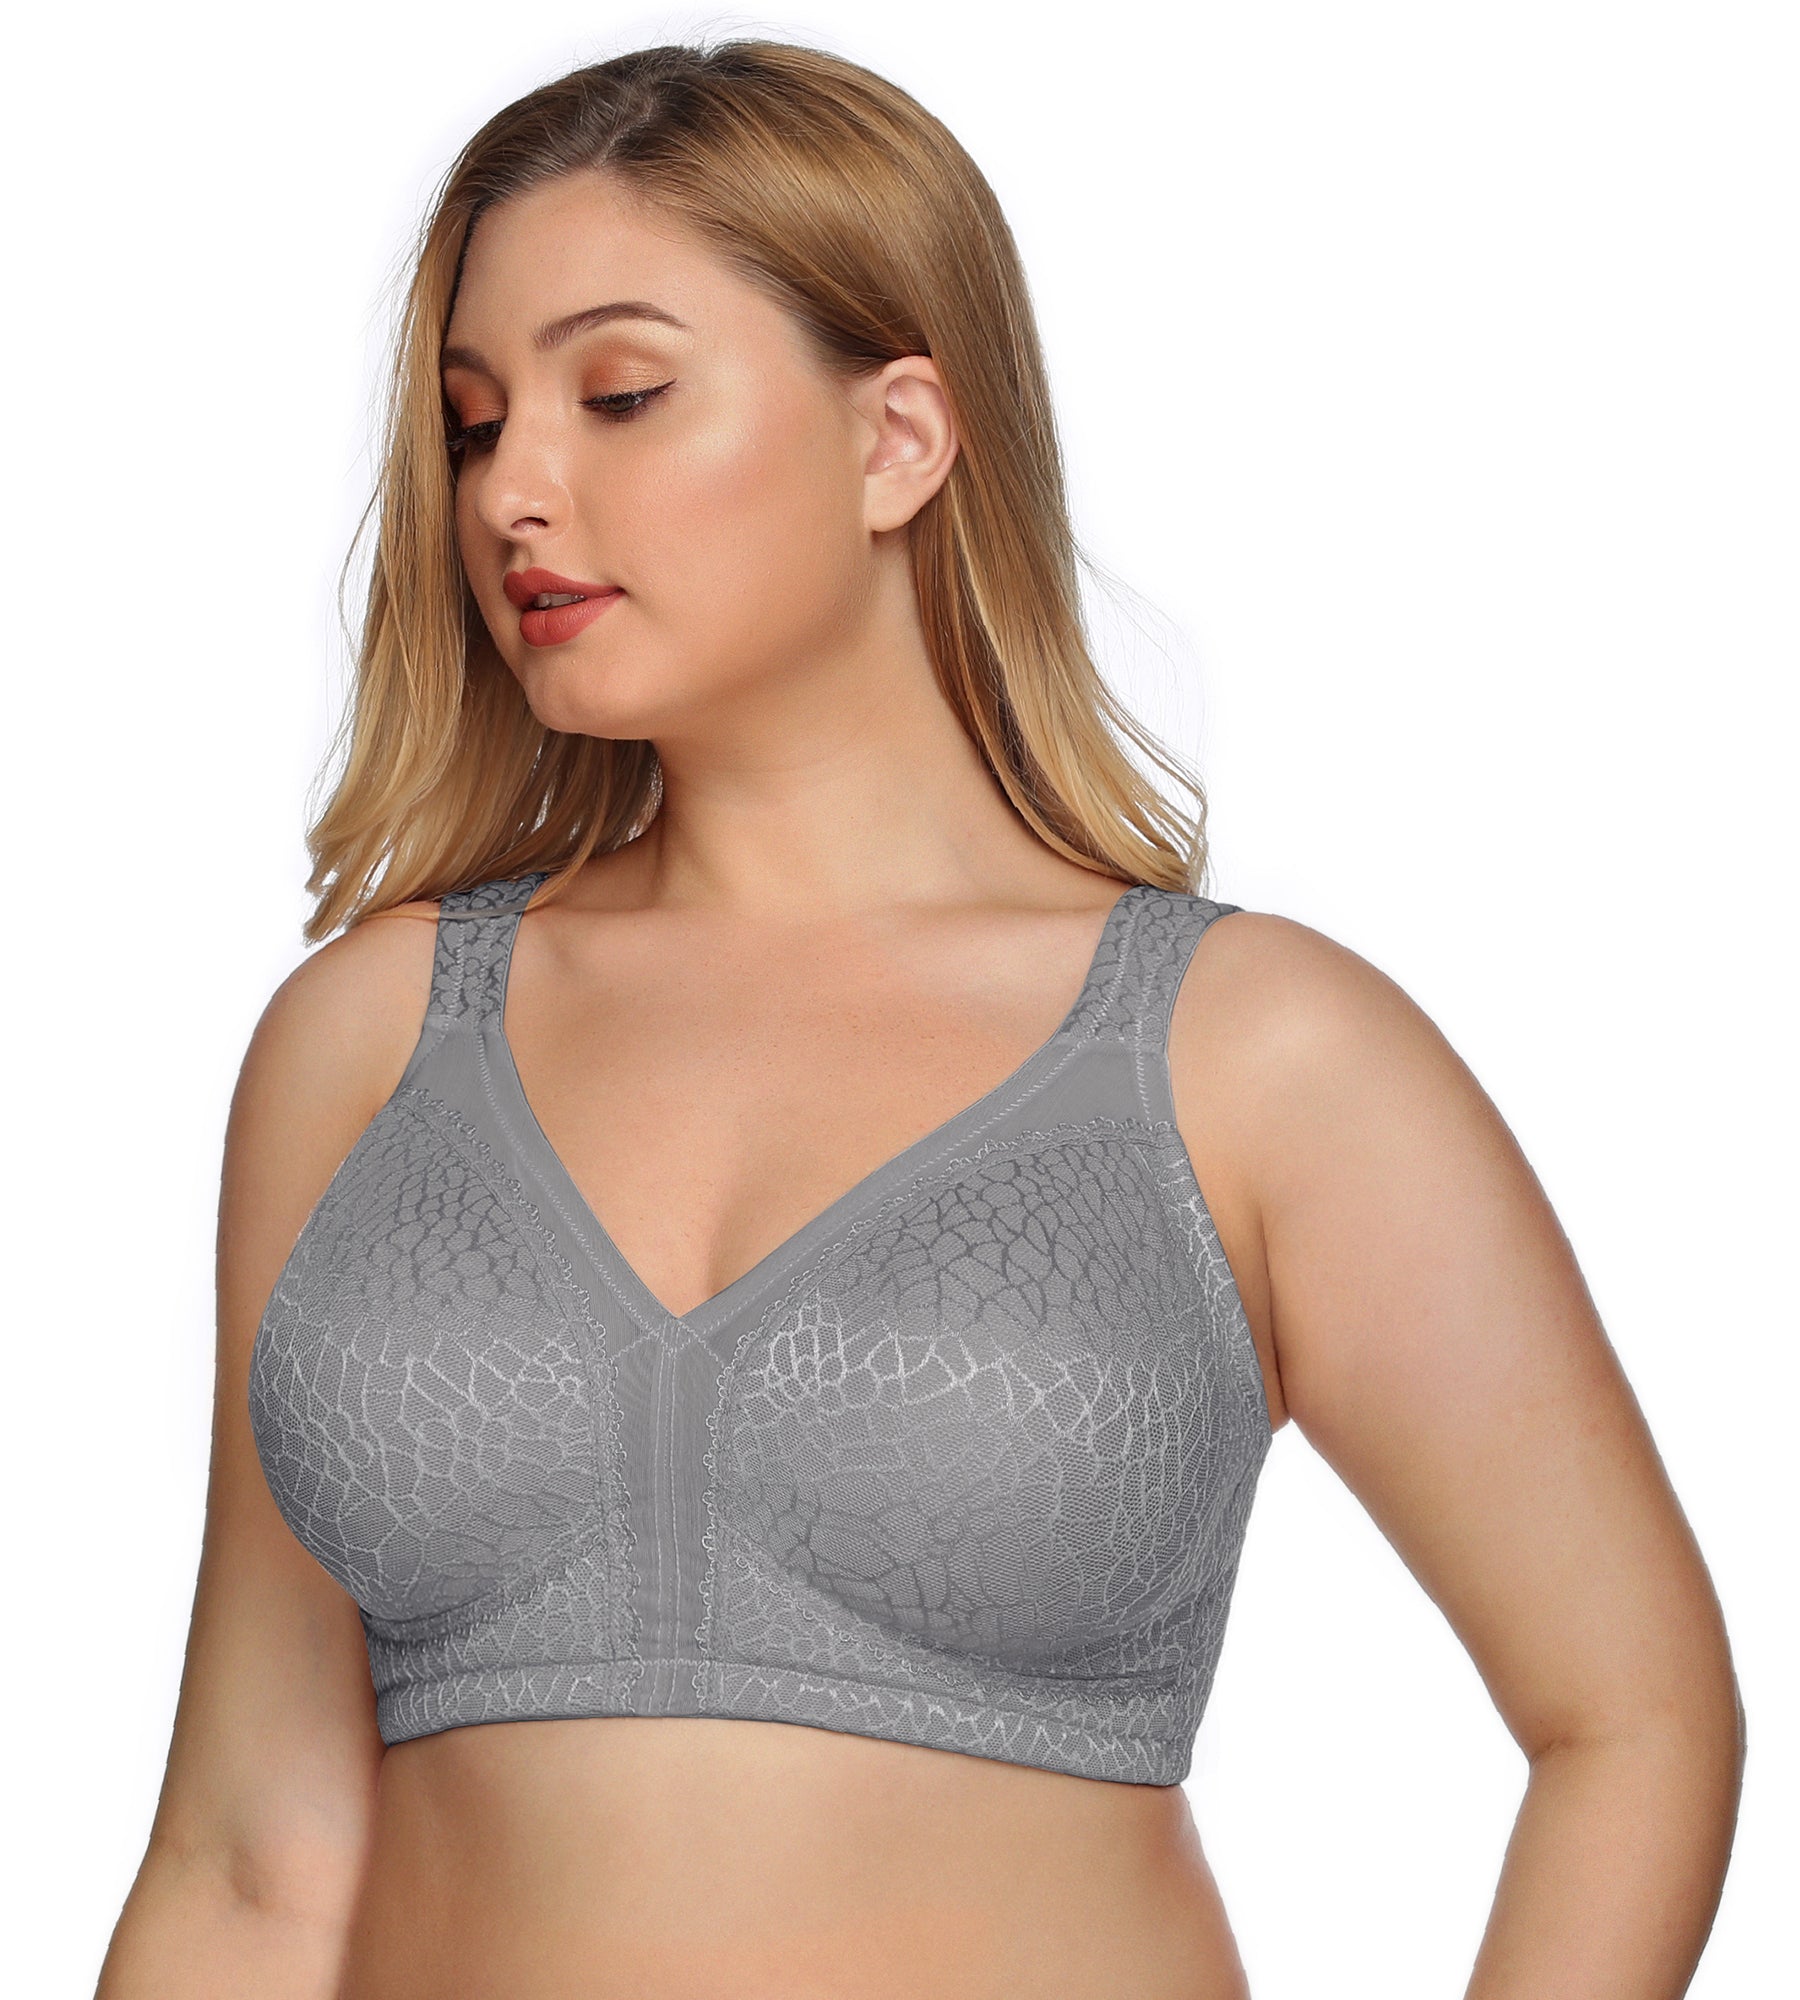 Grey lace bra size 36C new